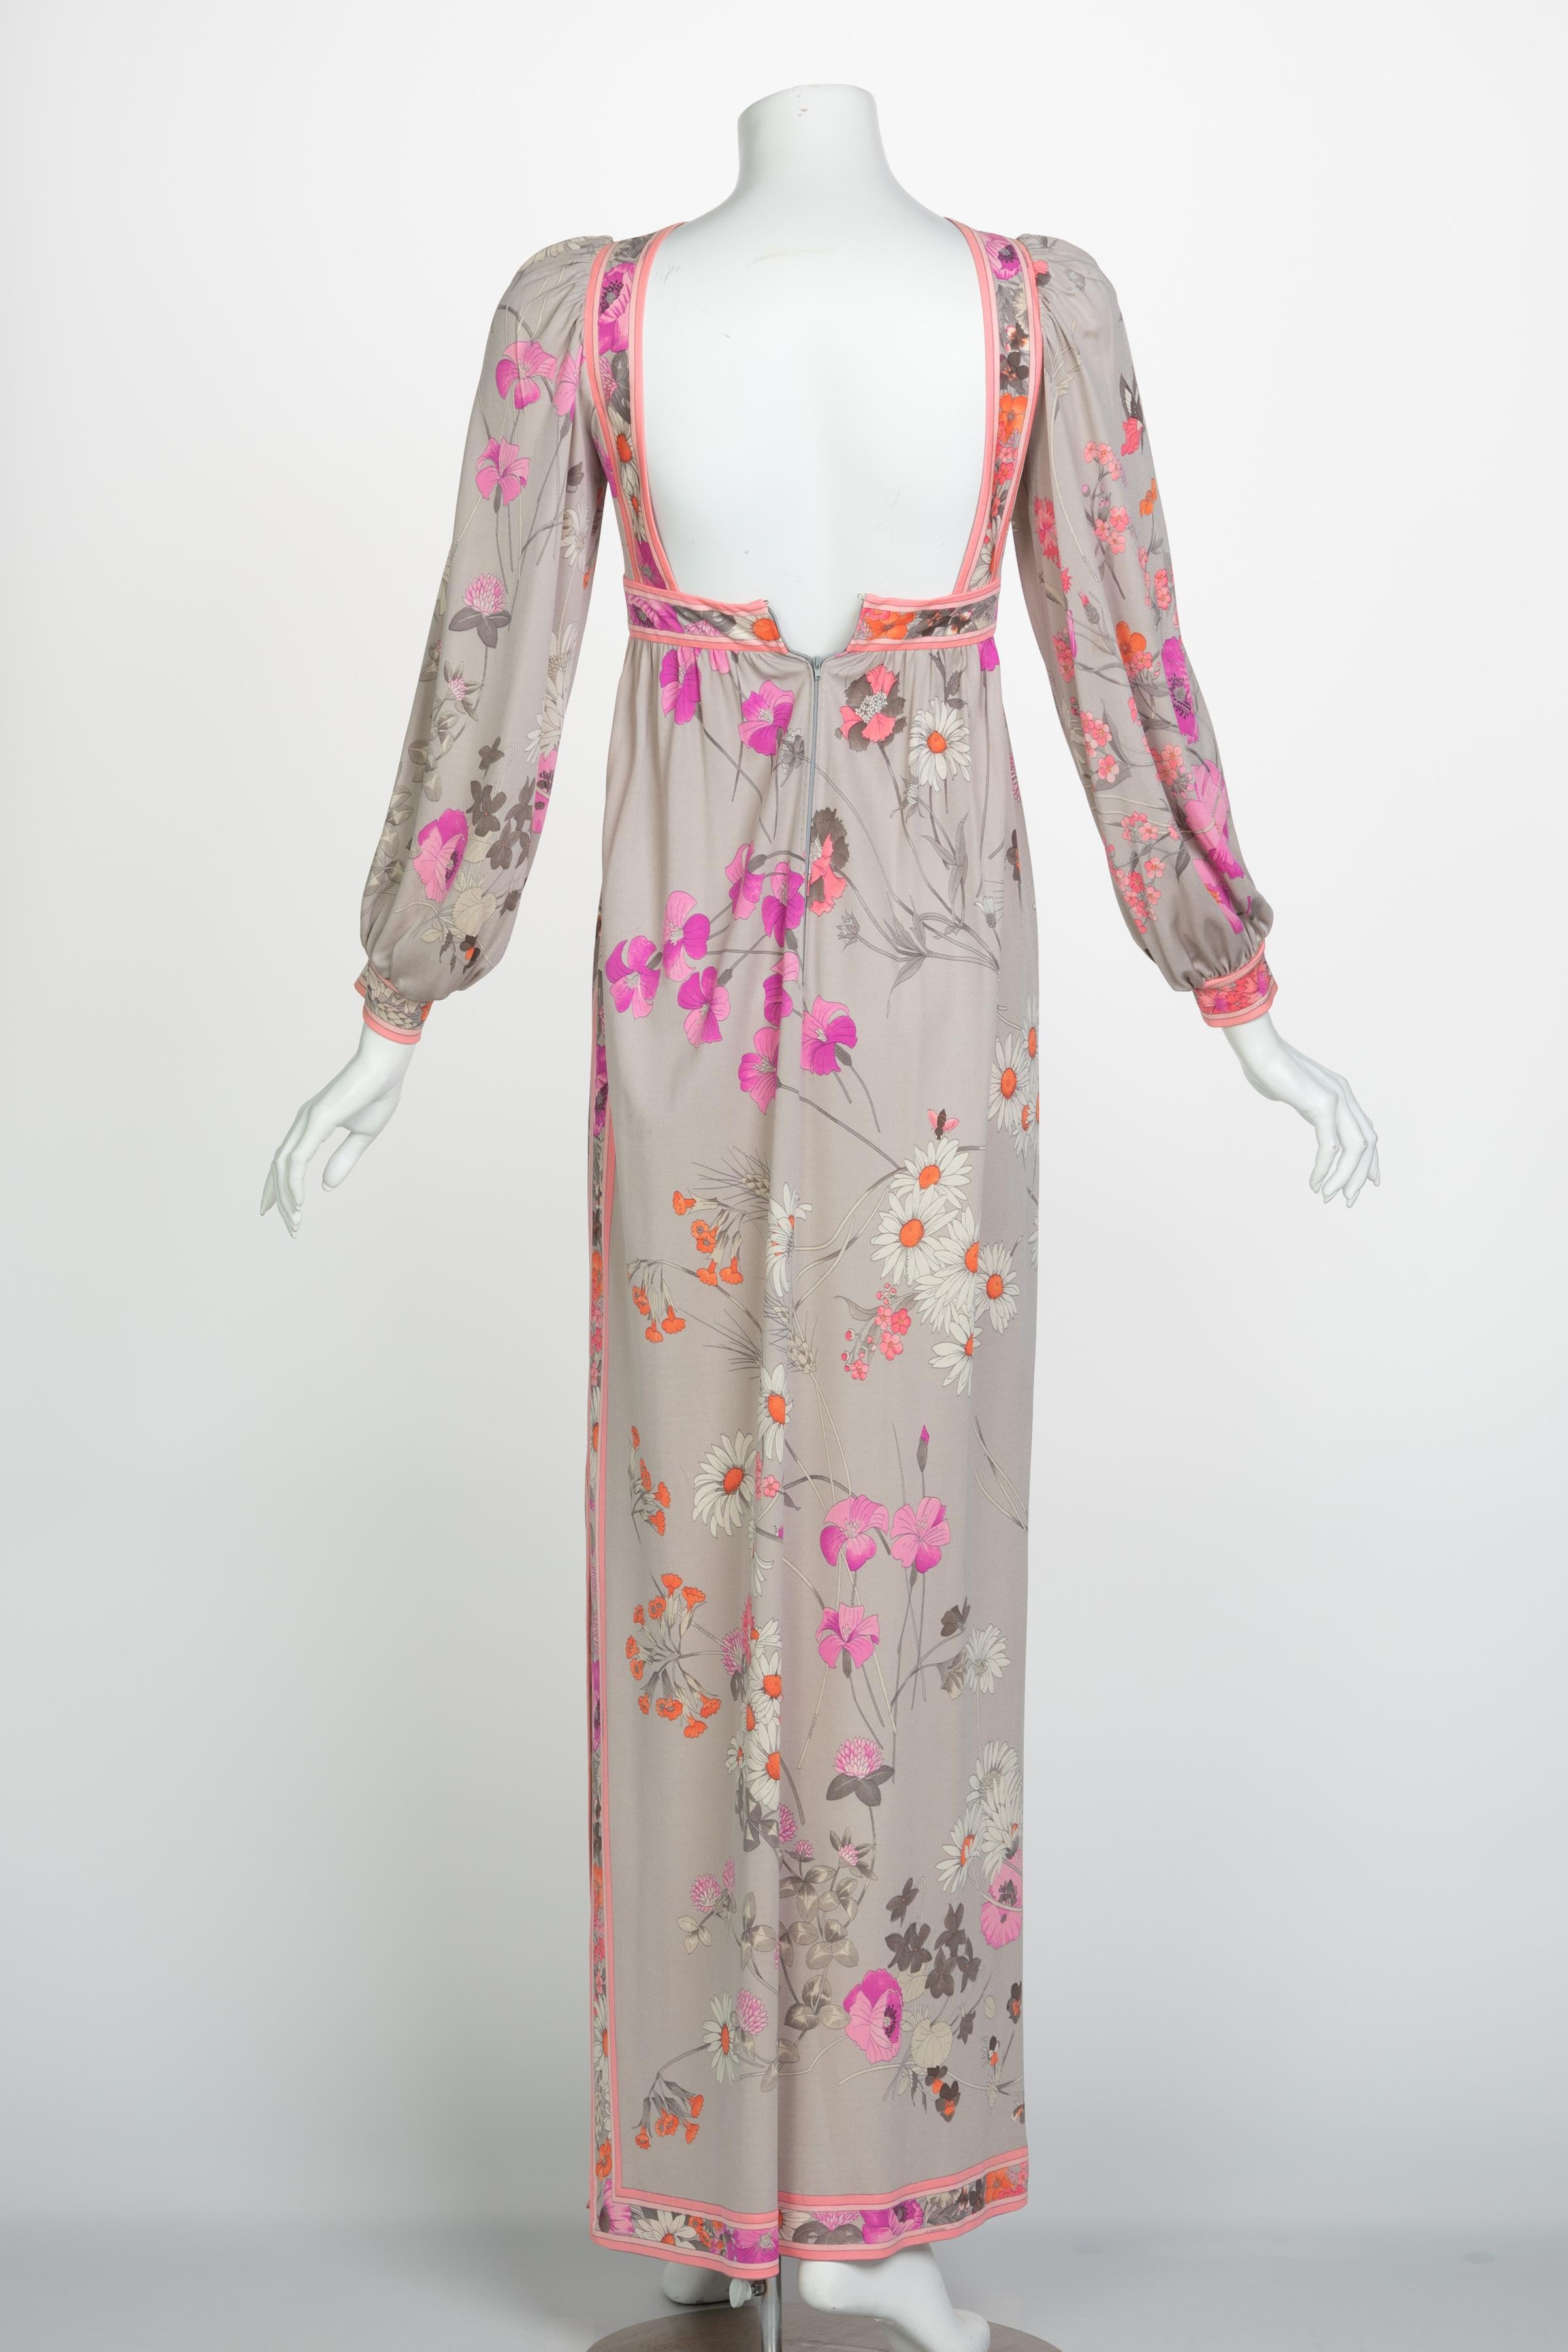 Women's Leonard Paris Silk Floral Floral Print Open Square-Back Maxi Dress, 1970s For Sale